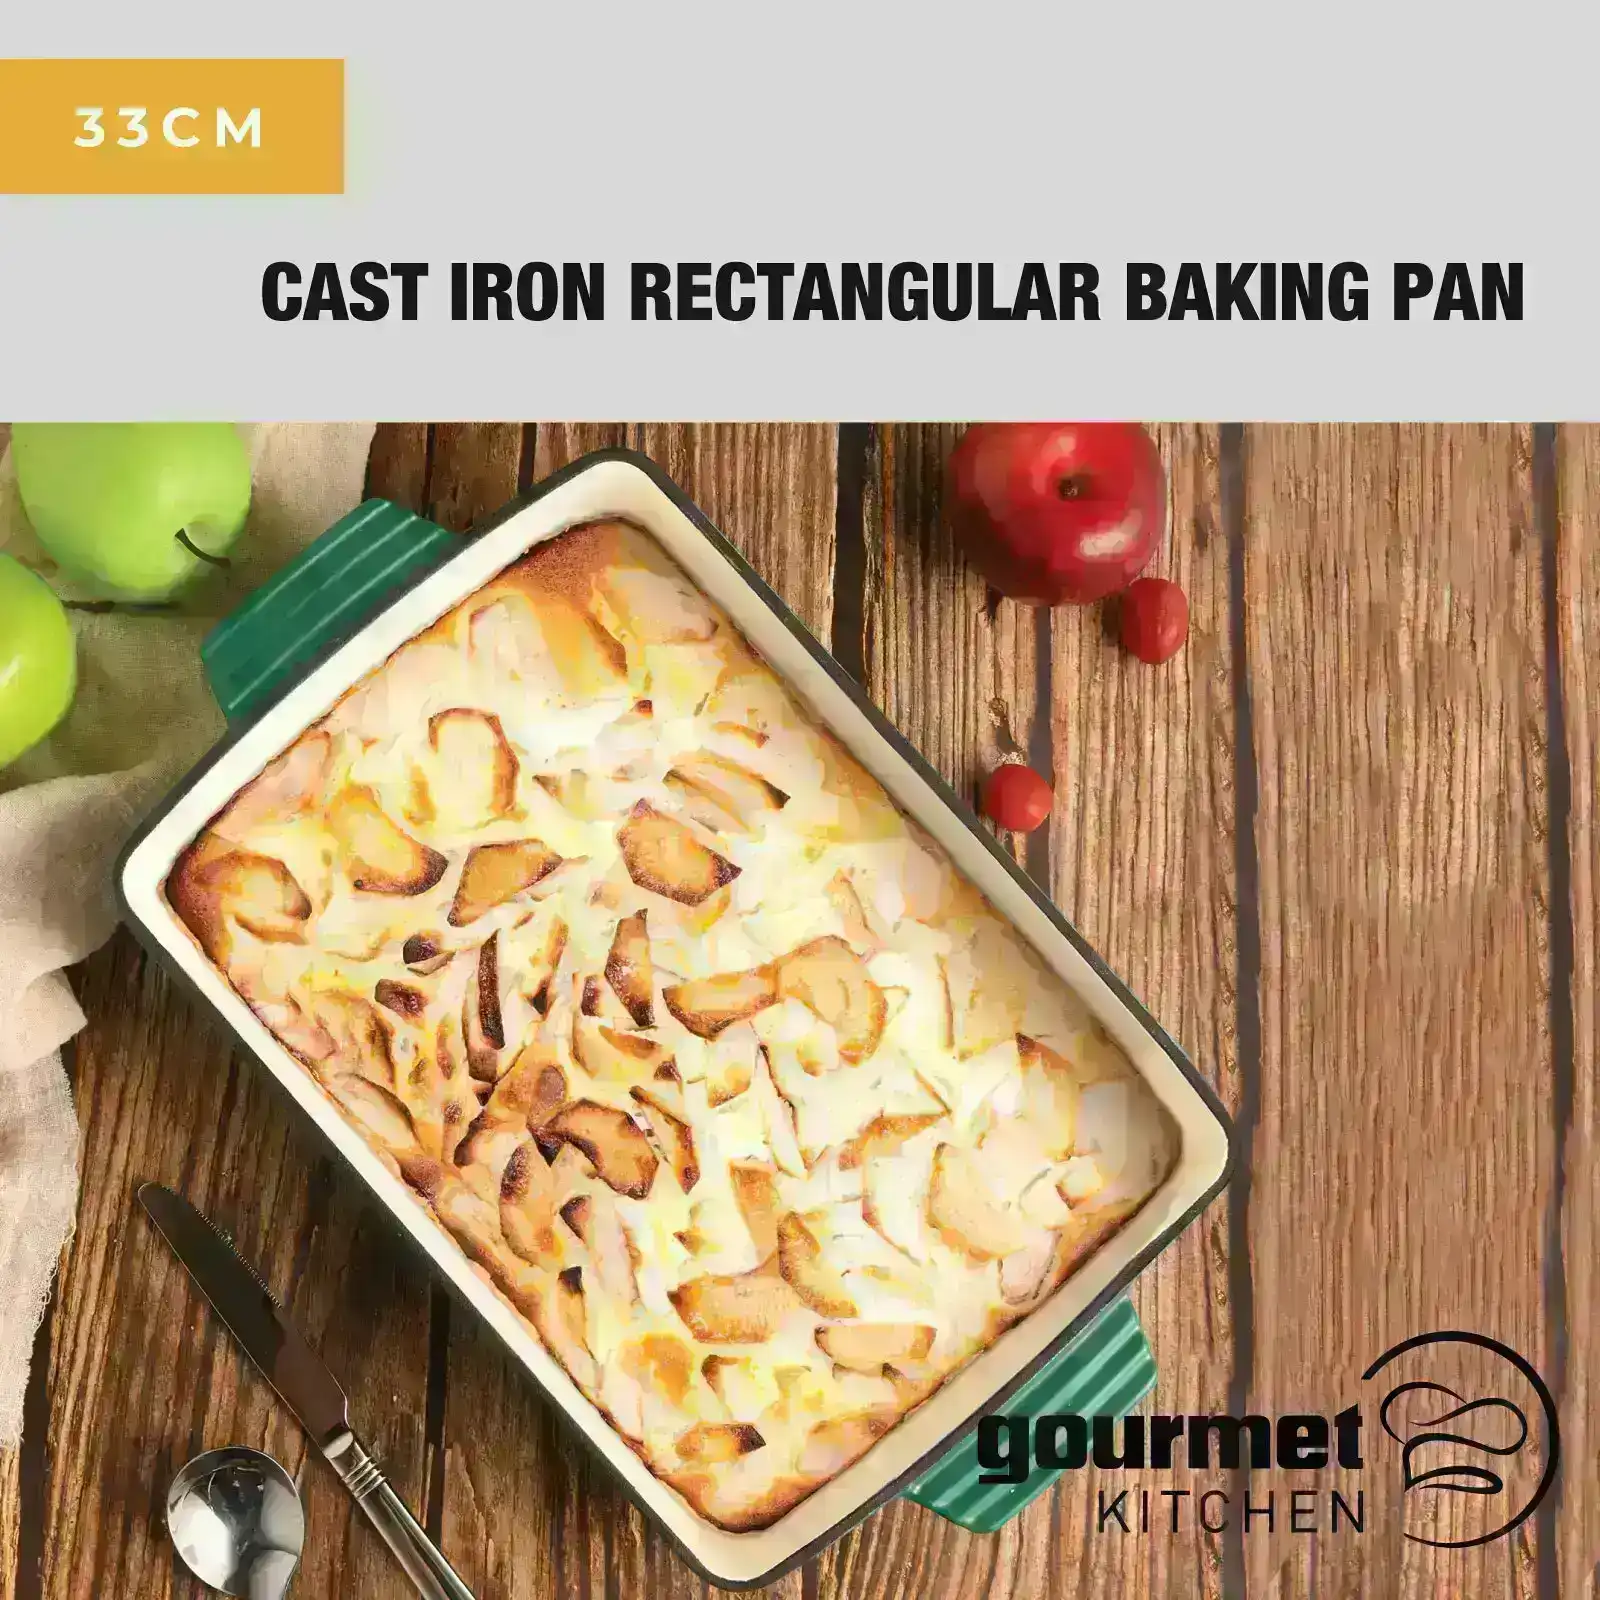 Gourmet Kitchen Cast Iron Rectangular Baking Pan 33cm Eden Green